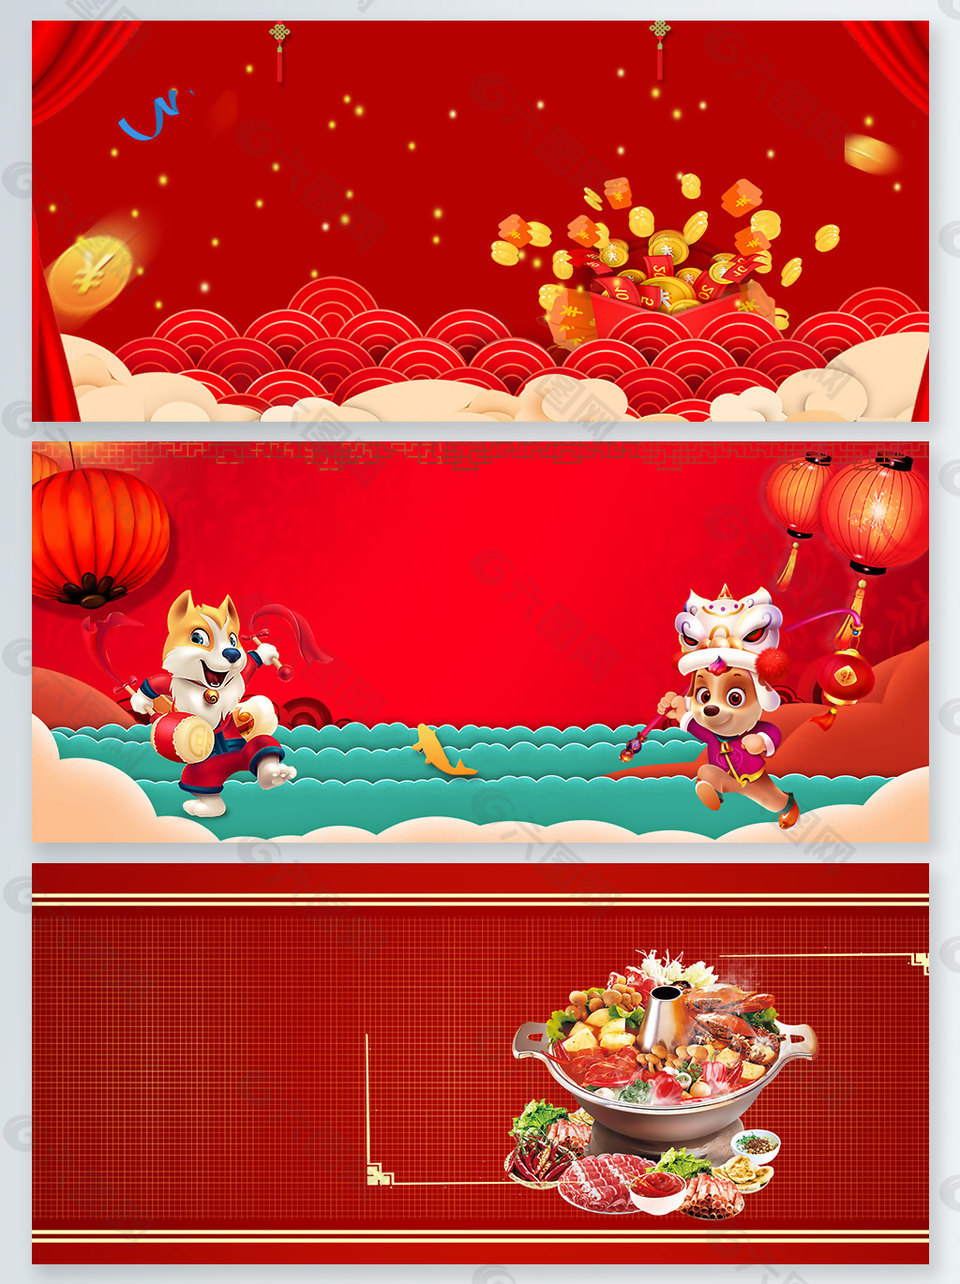 红色火锅中国风广告背景图